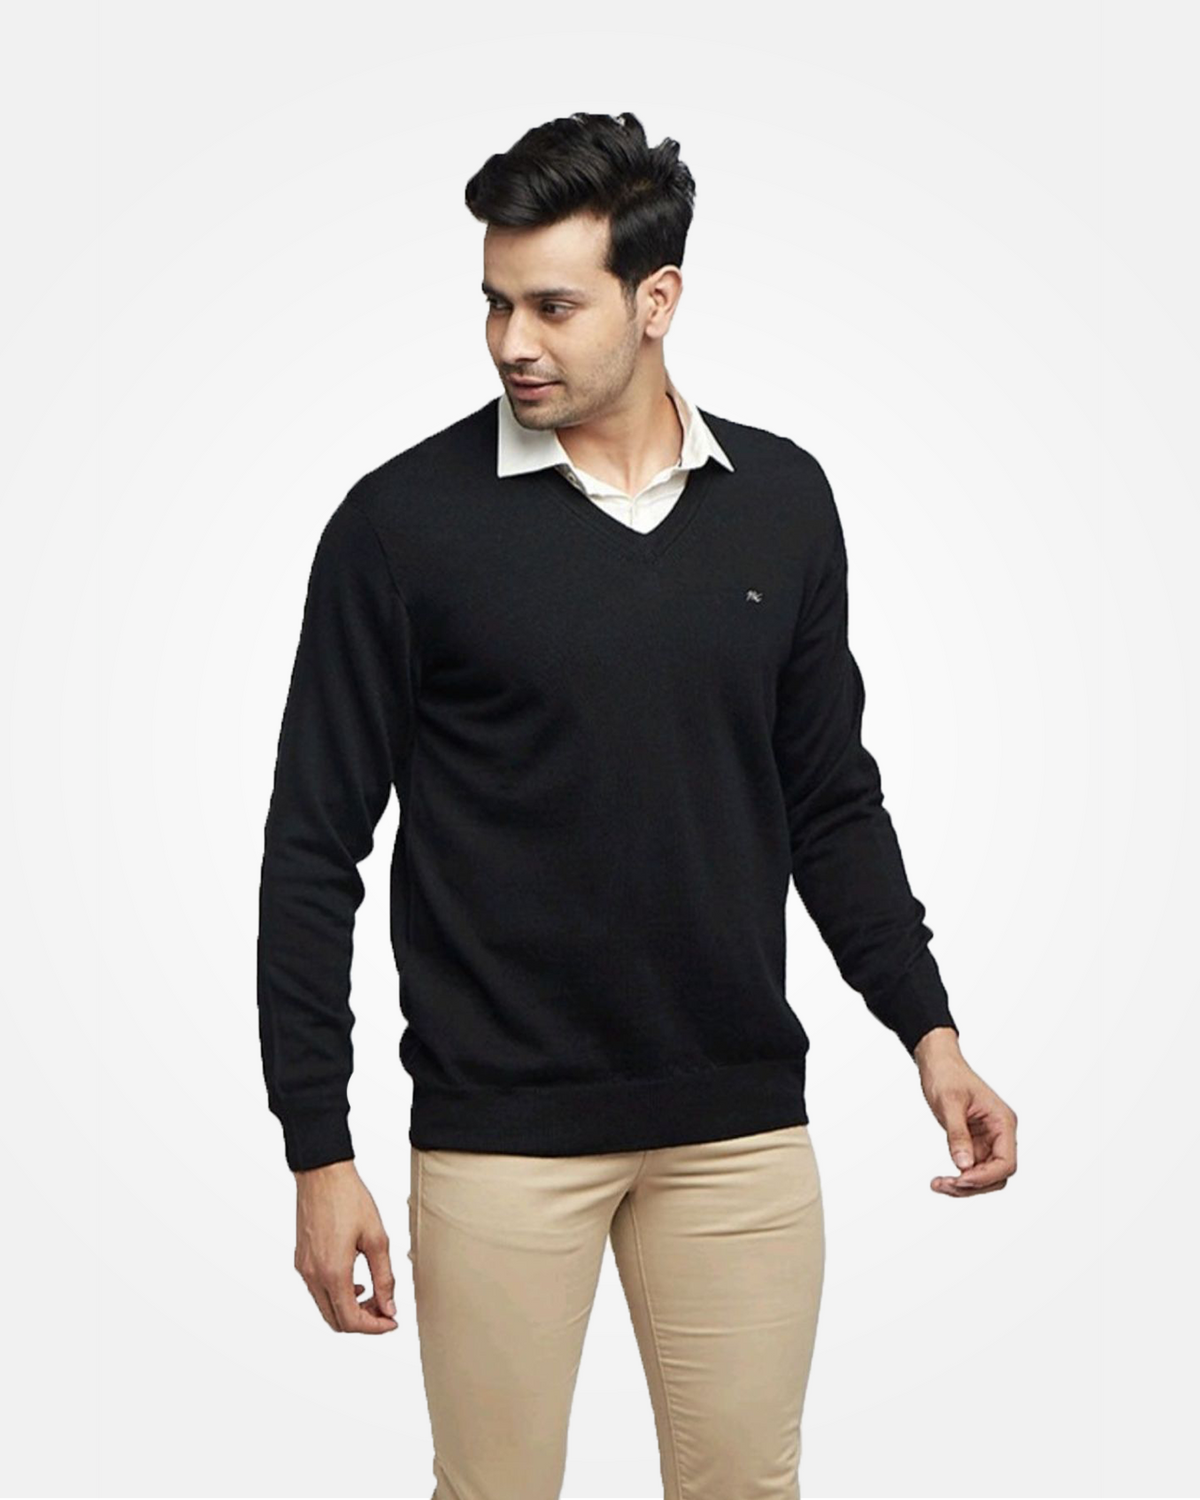 Merino Wool V-Neck Pullover For Men